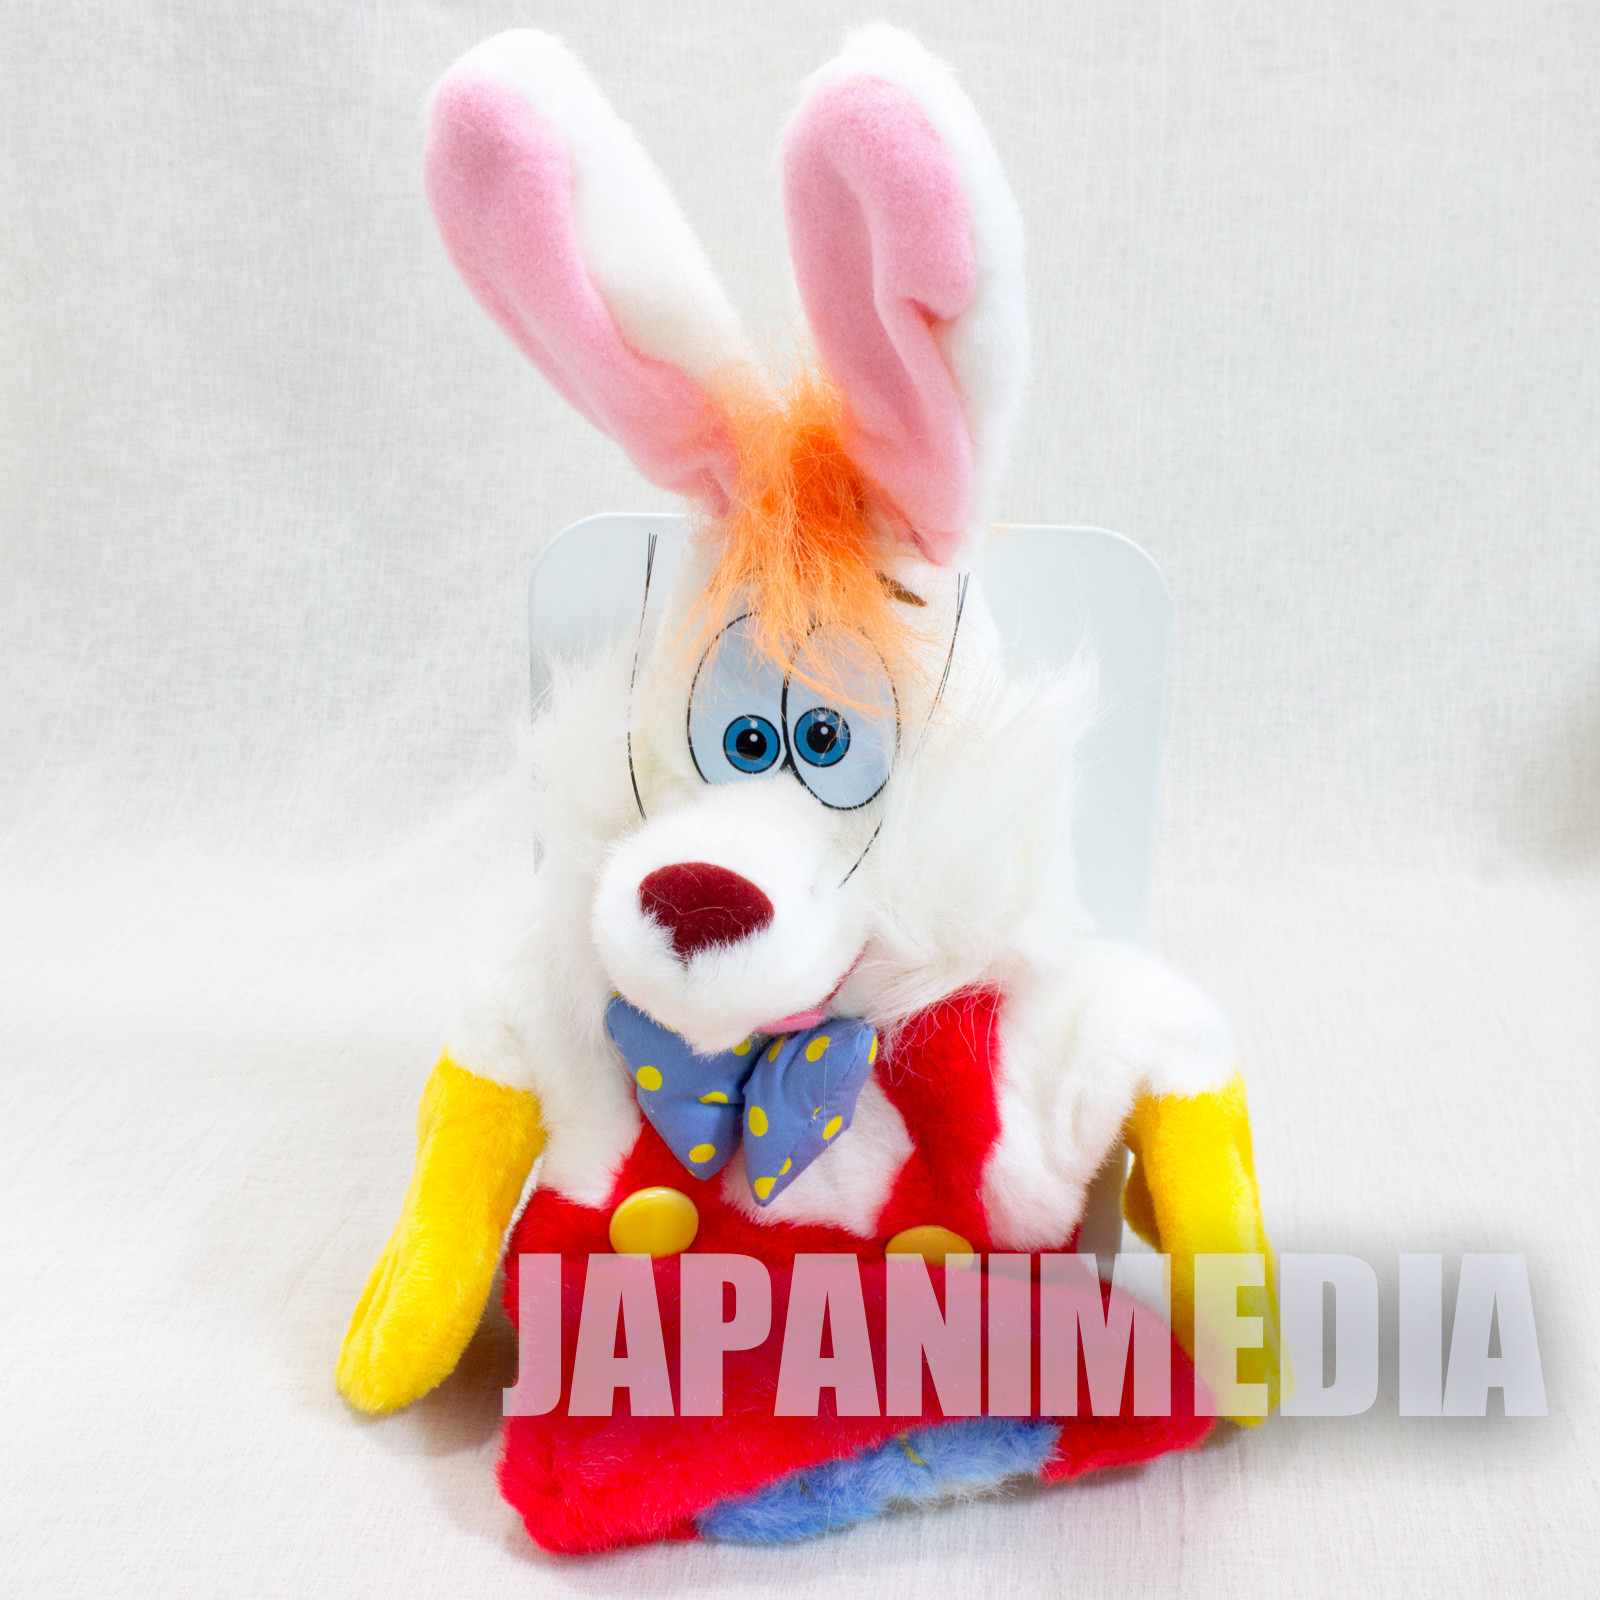 Retro RARE! Who Framed Roger Rabbit Hand Puppet Plush Doll